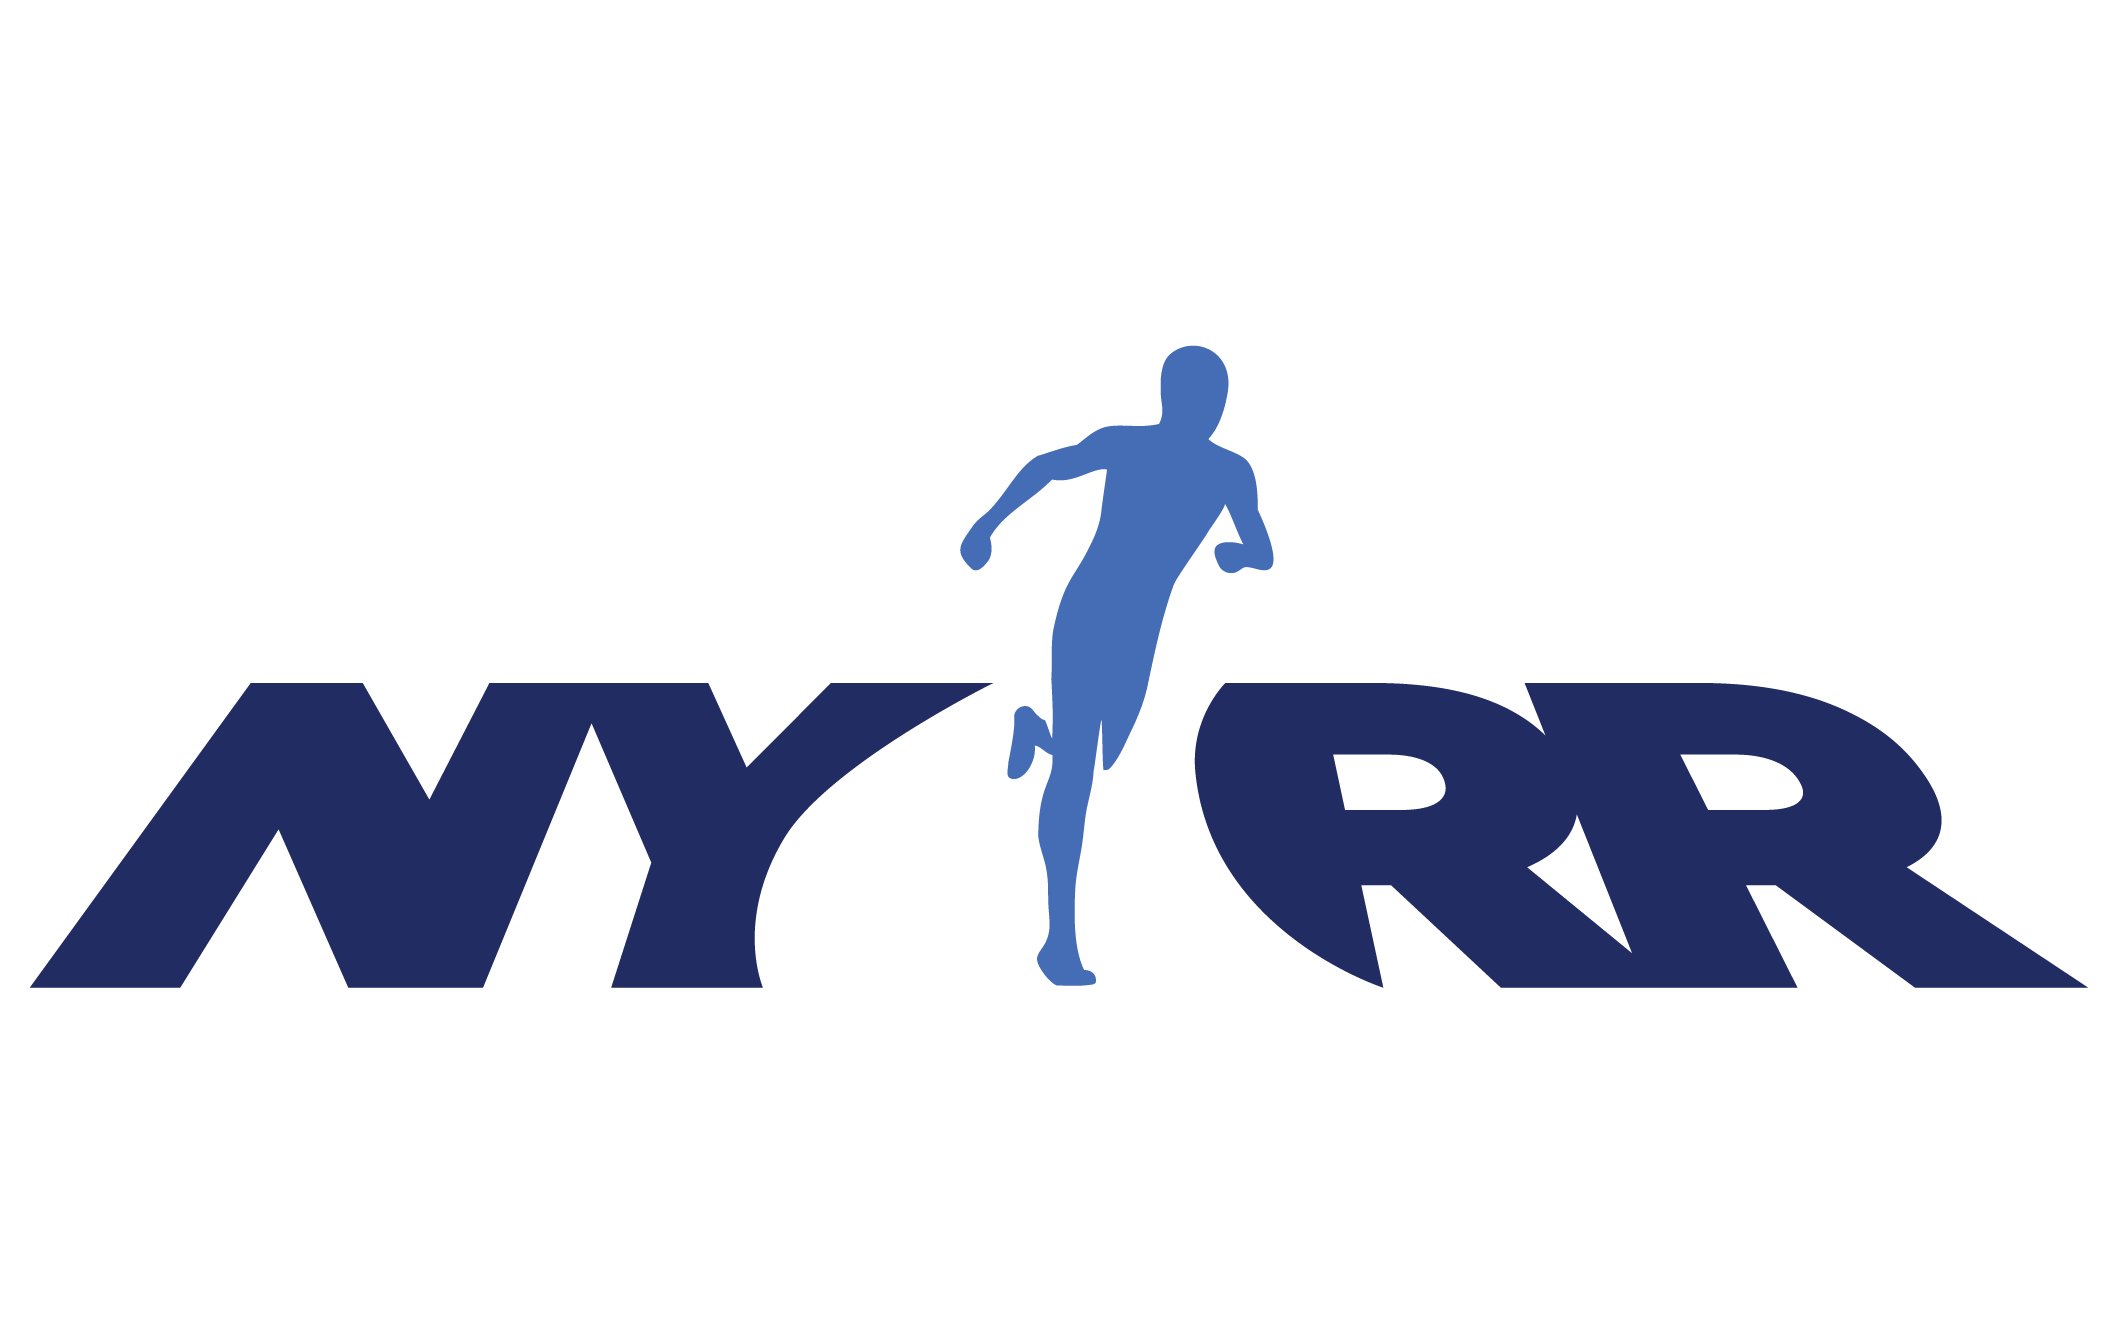 website_logos-nyrr